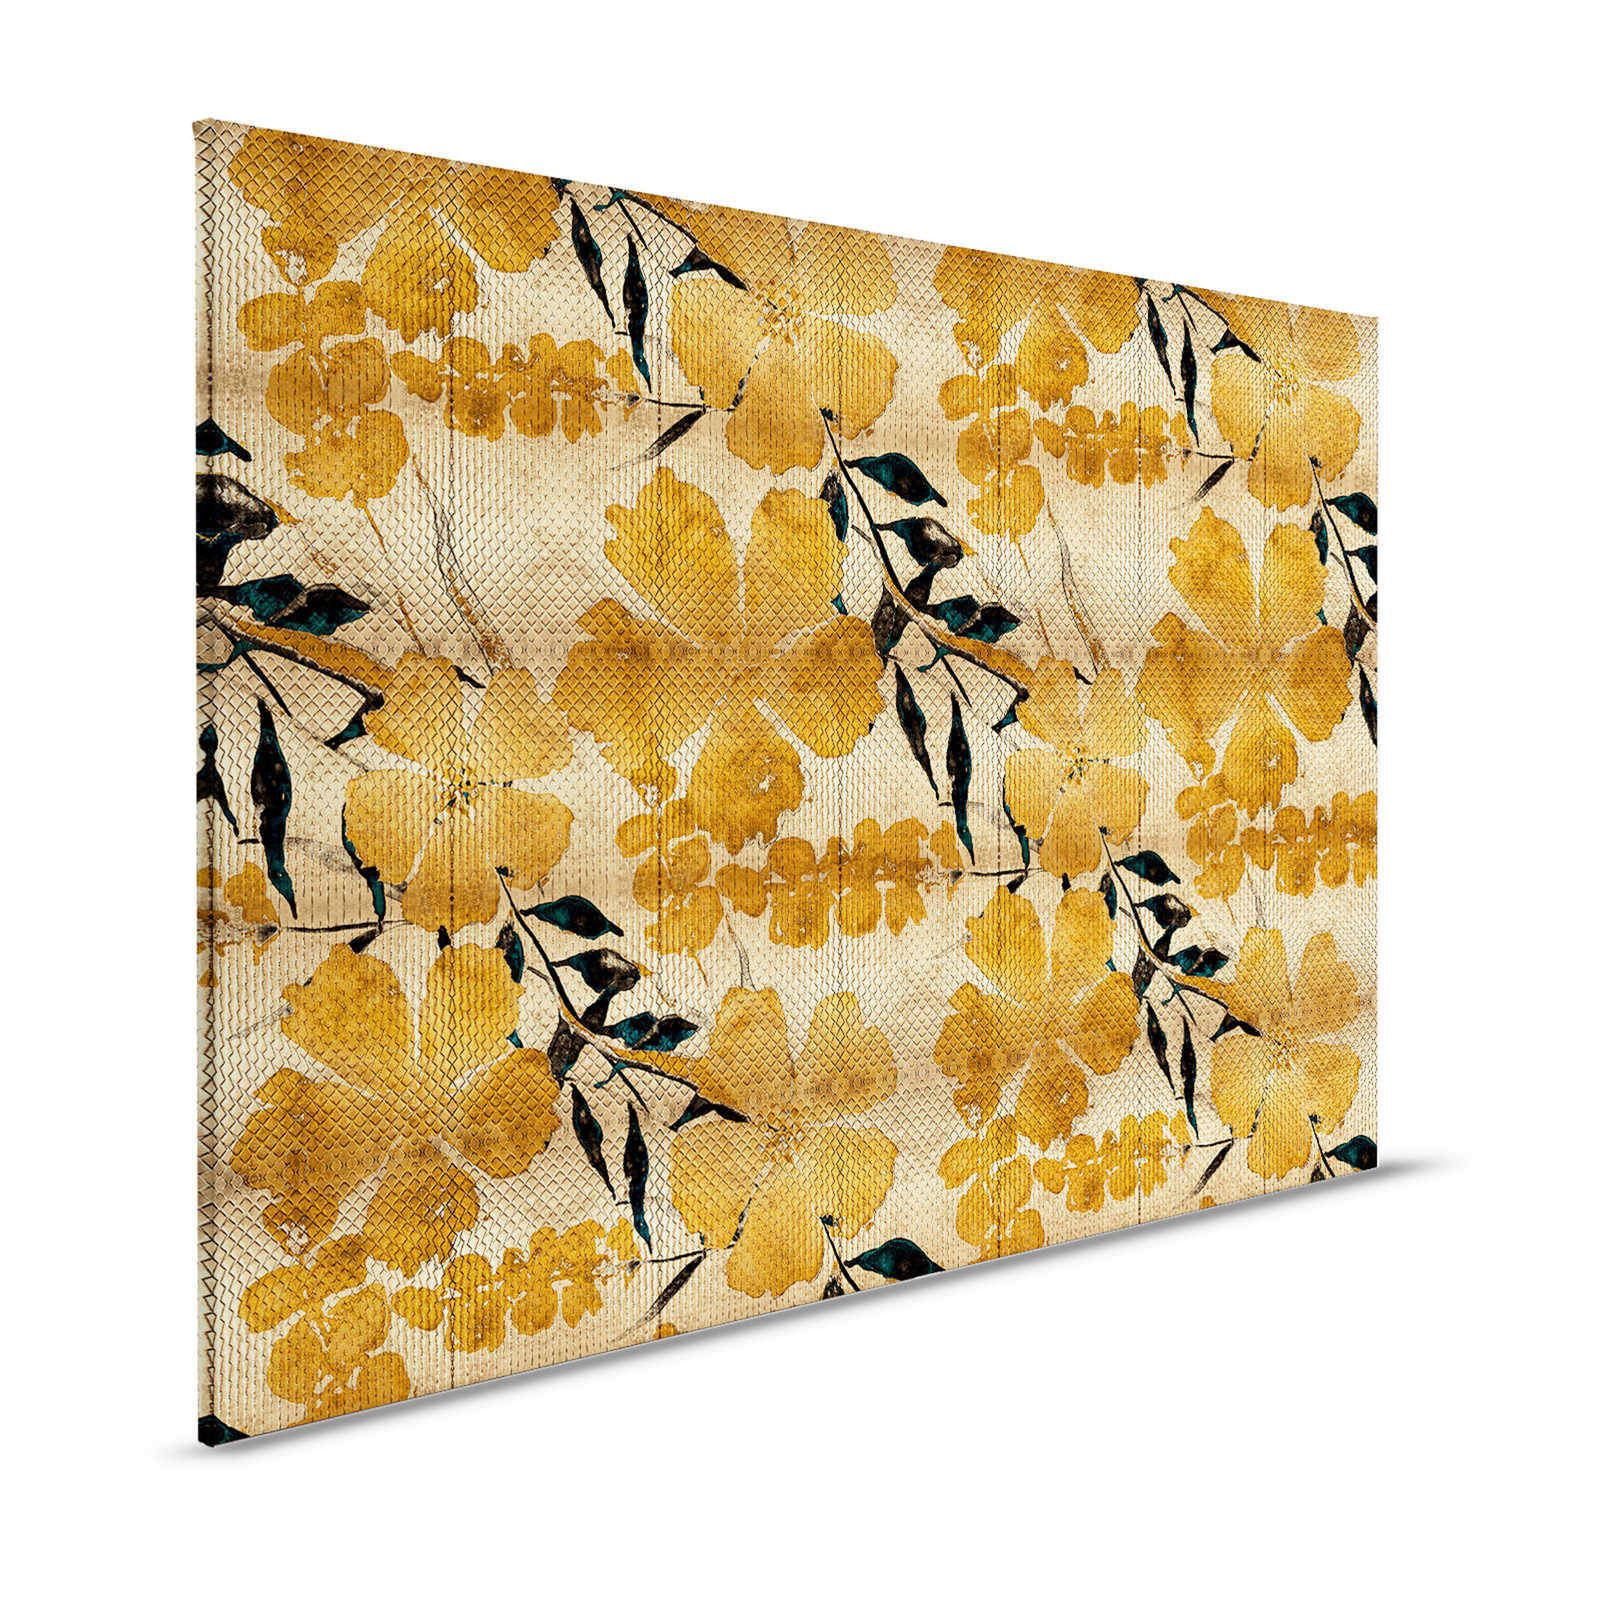 Odessa 1 - Quadro su tela metallizzata con motivi di fiori di ciliegio in oro - 1,20 m x 0,80 m
